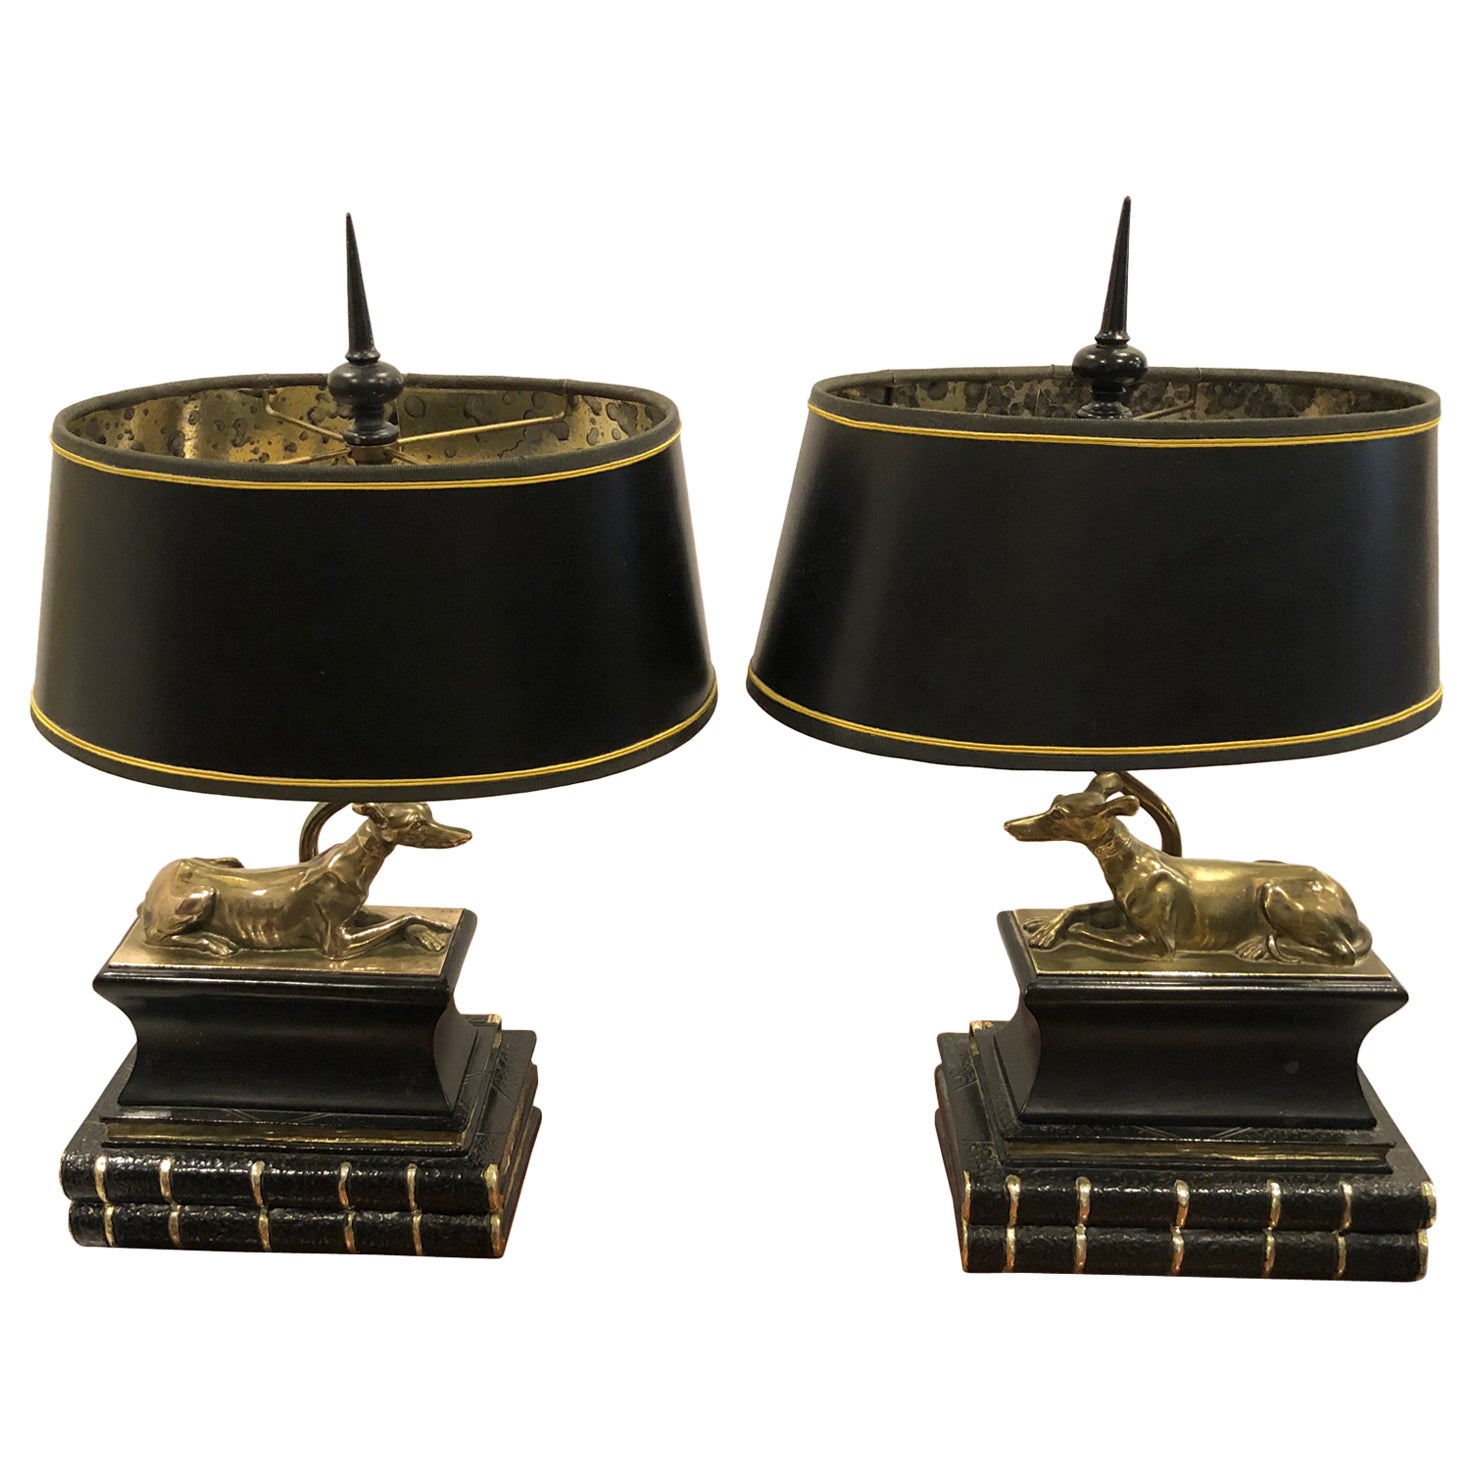 Paar fantastische Windhund-Tischlampen aus Messing, die auf Lederbüchern ruhen